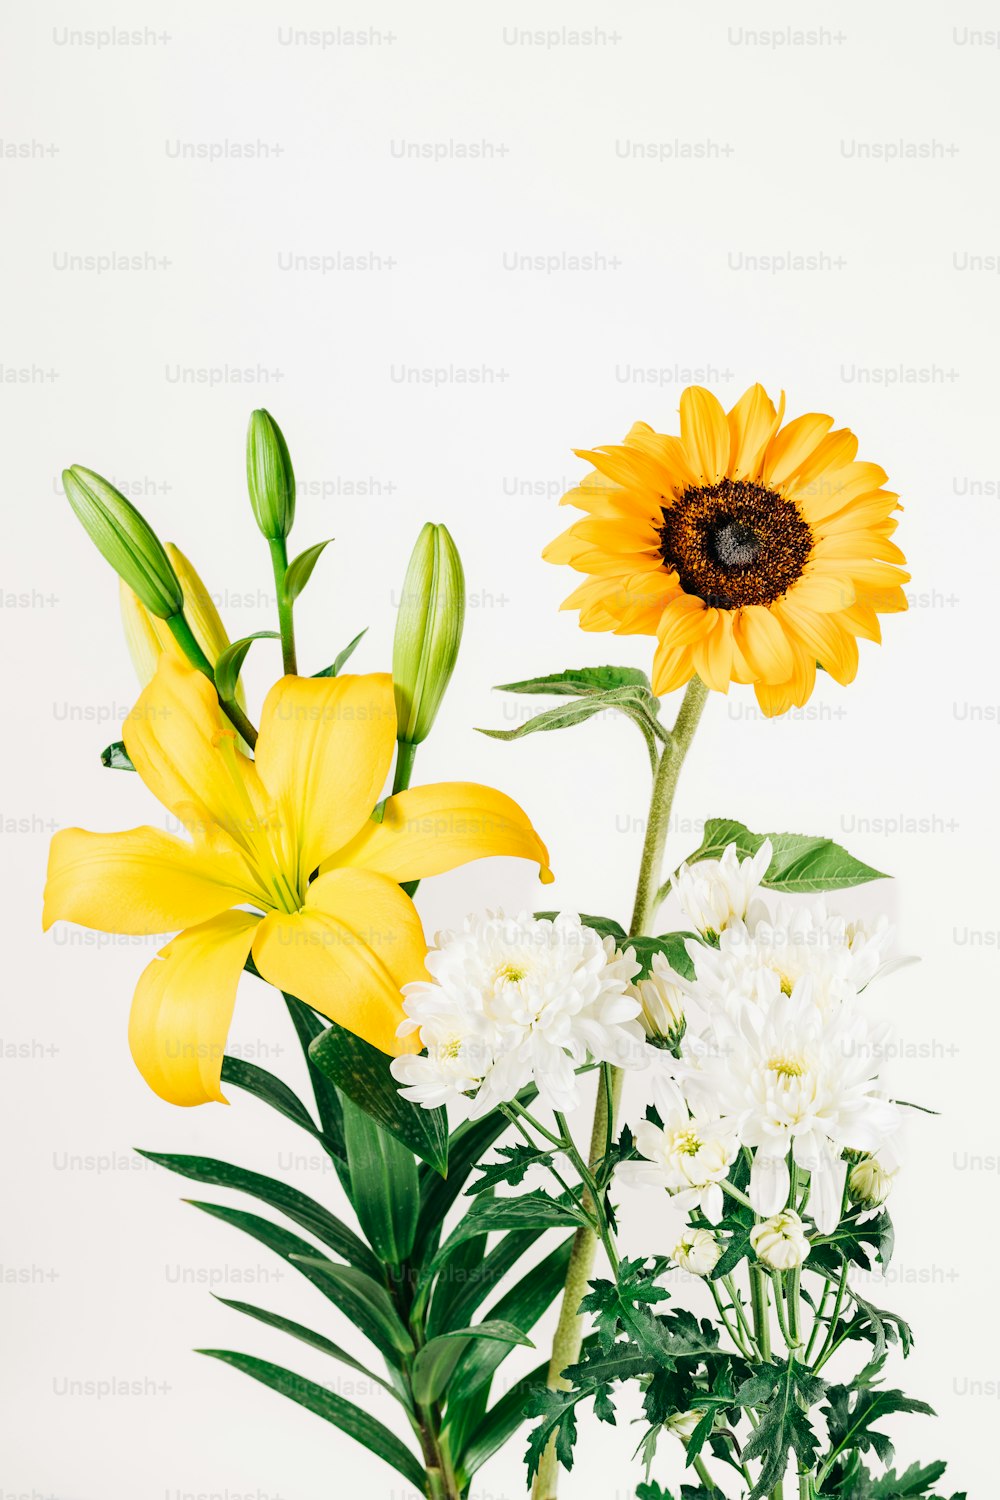 Un jarrón lleno de flores blancas y amarillas